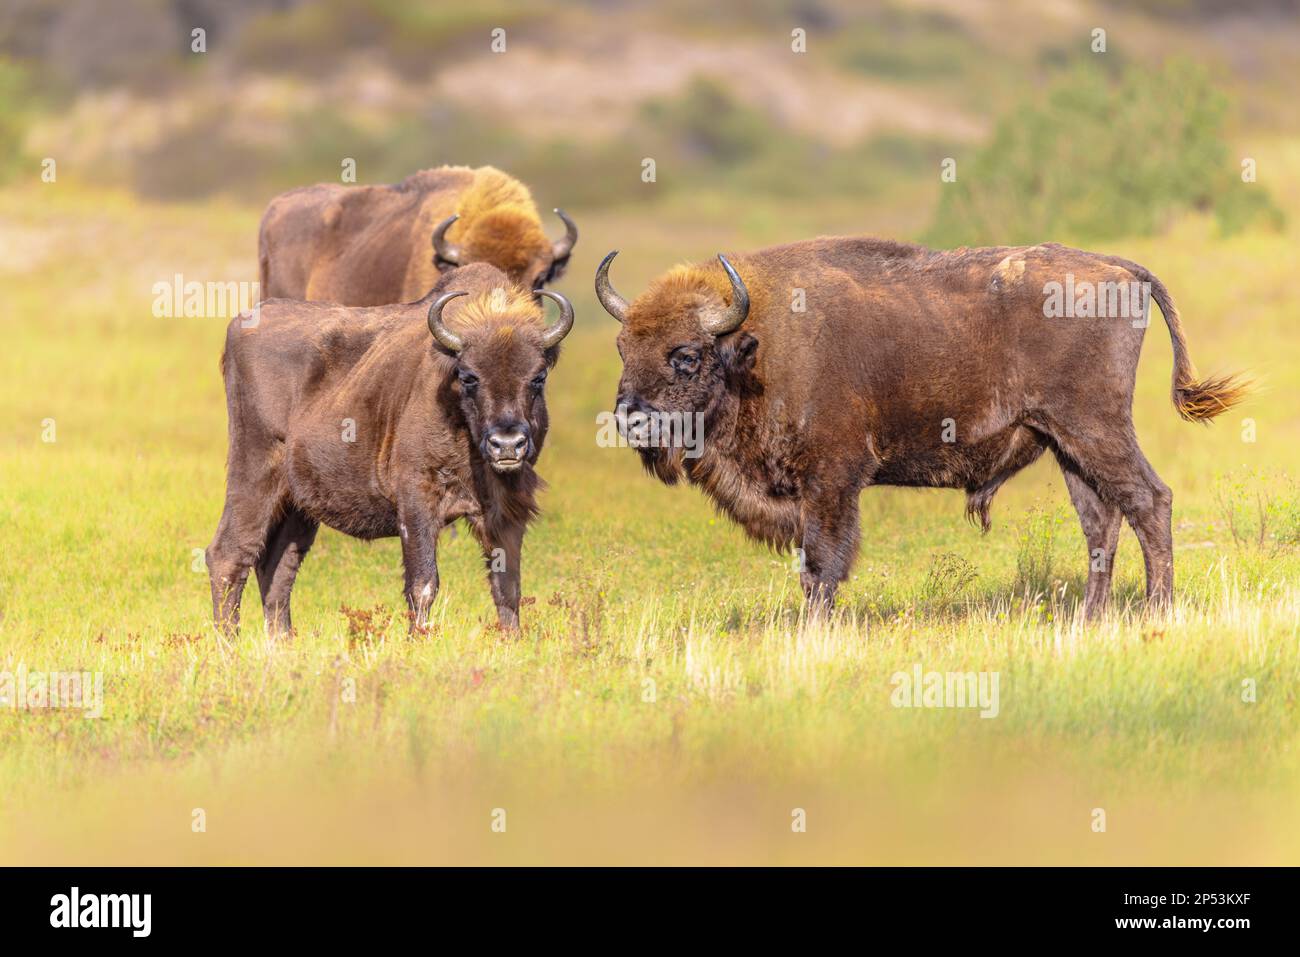 Wisent oder Europäische Bisons (Bison bonasus) im Nationalpark Zuid Kennemerland in den Niederlanden. Wildtiere in Europa. Stockfoto